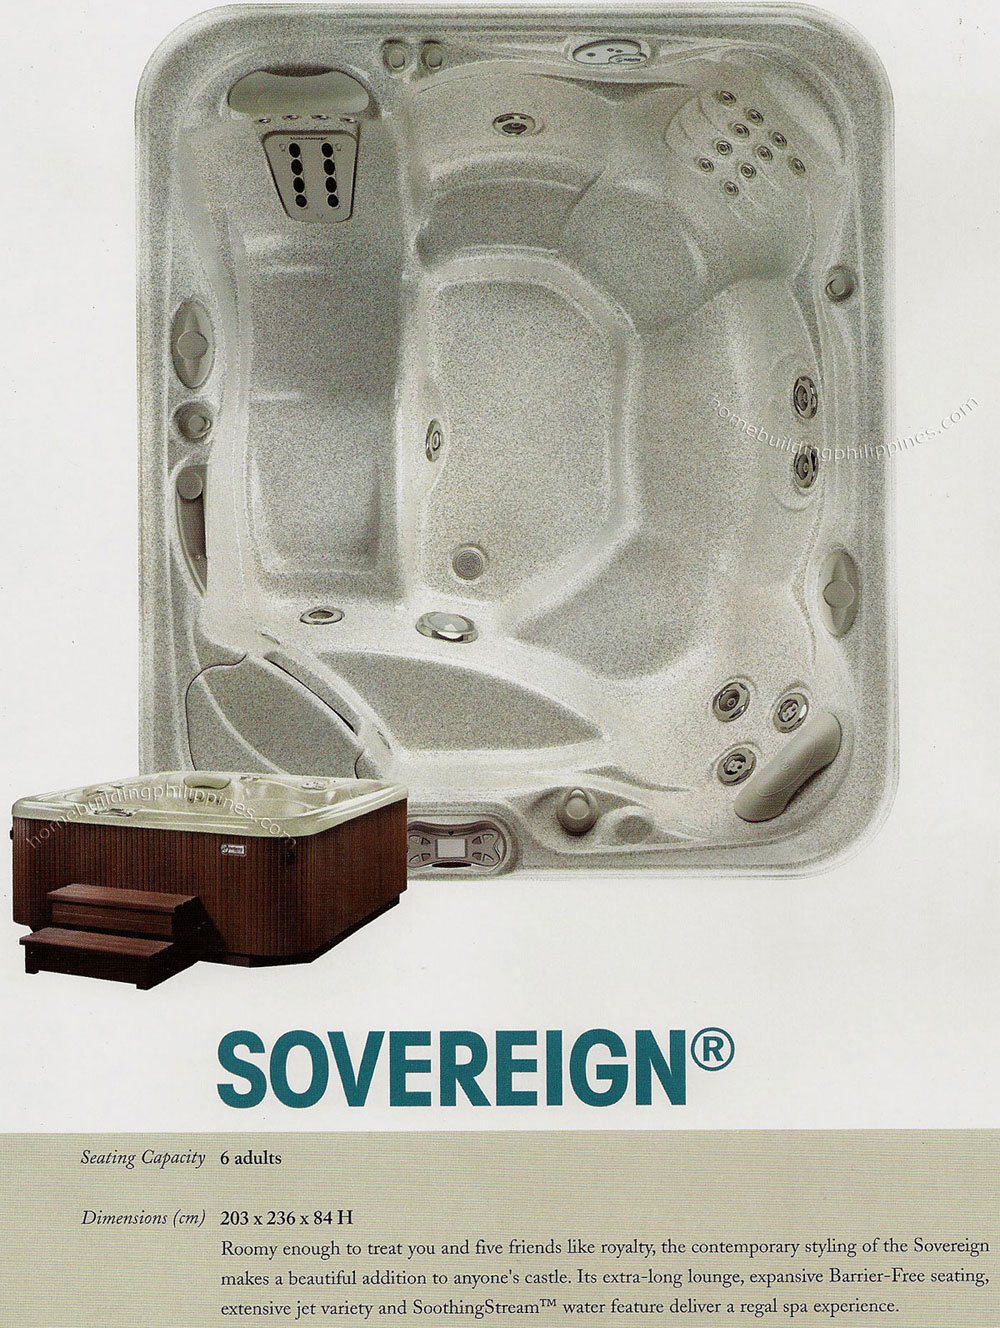 HotSpring Portable Spa - Sovereign